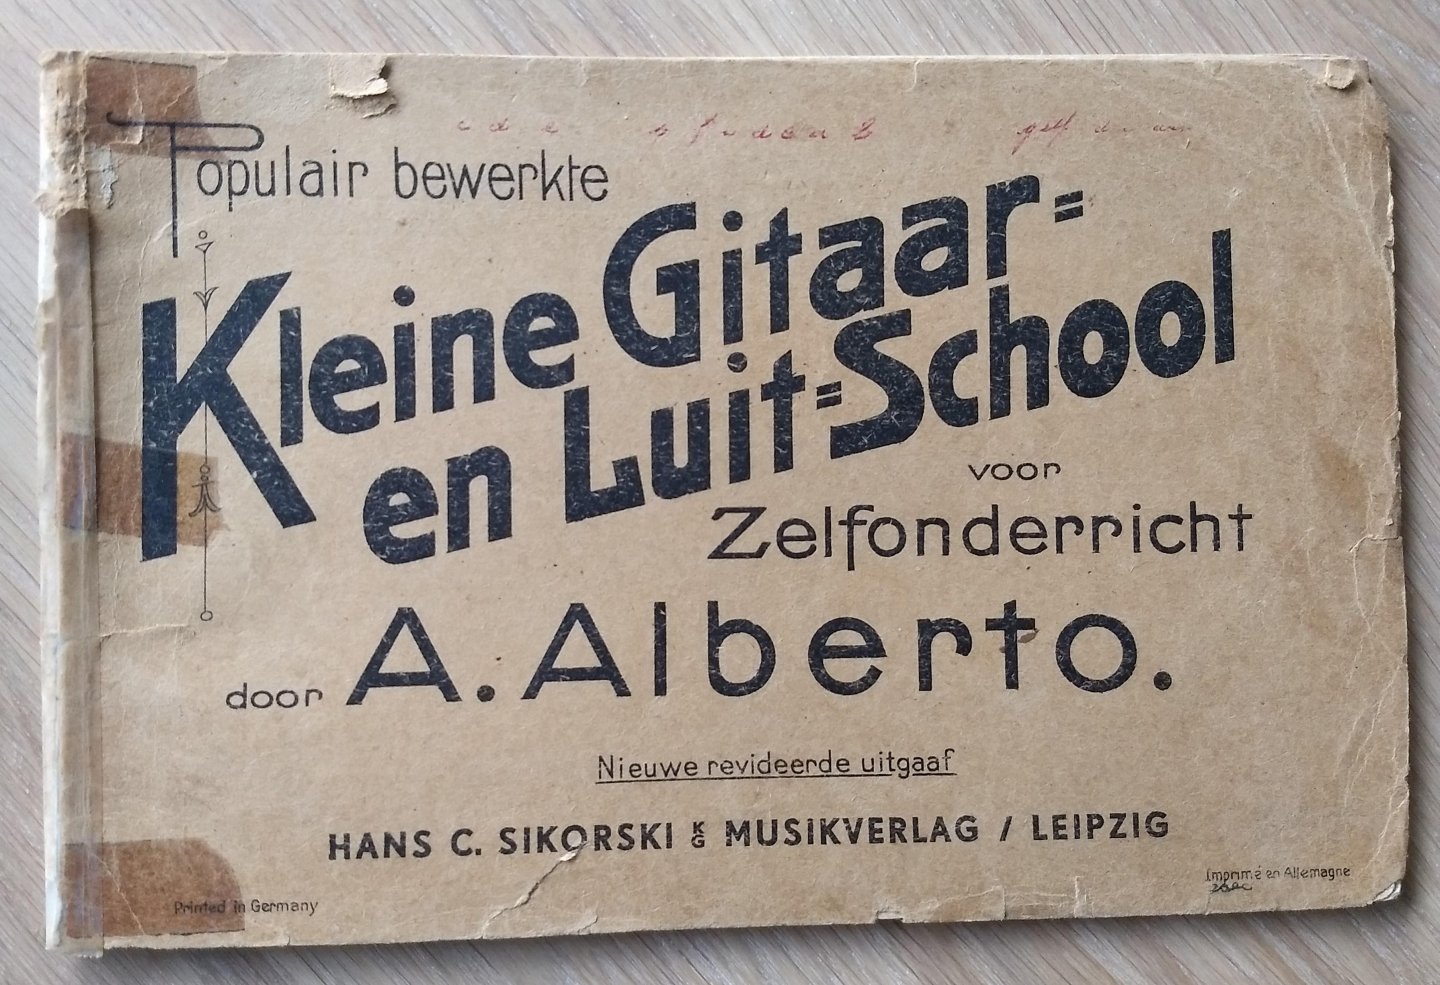 Alberto .A. - Populair bewerkte KLEINE GITAAR EN LUIT SCHOOL voor zelfonderricht